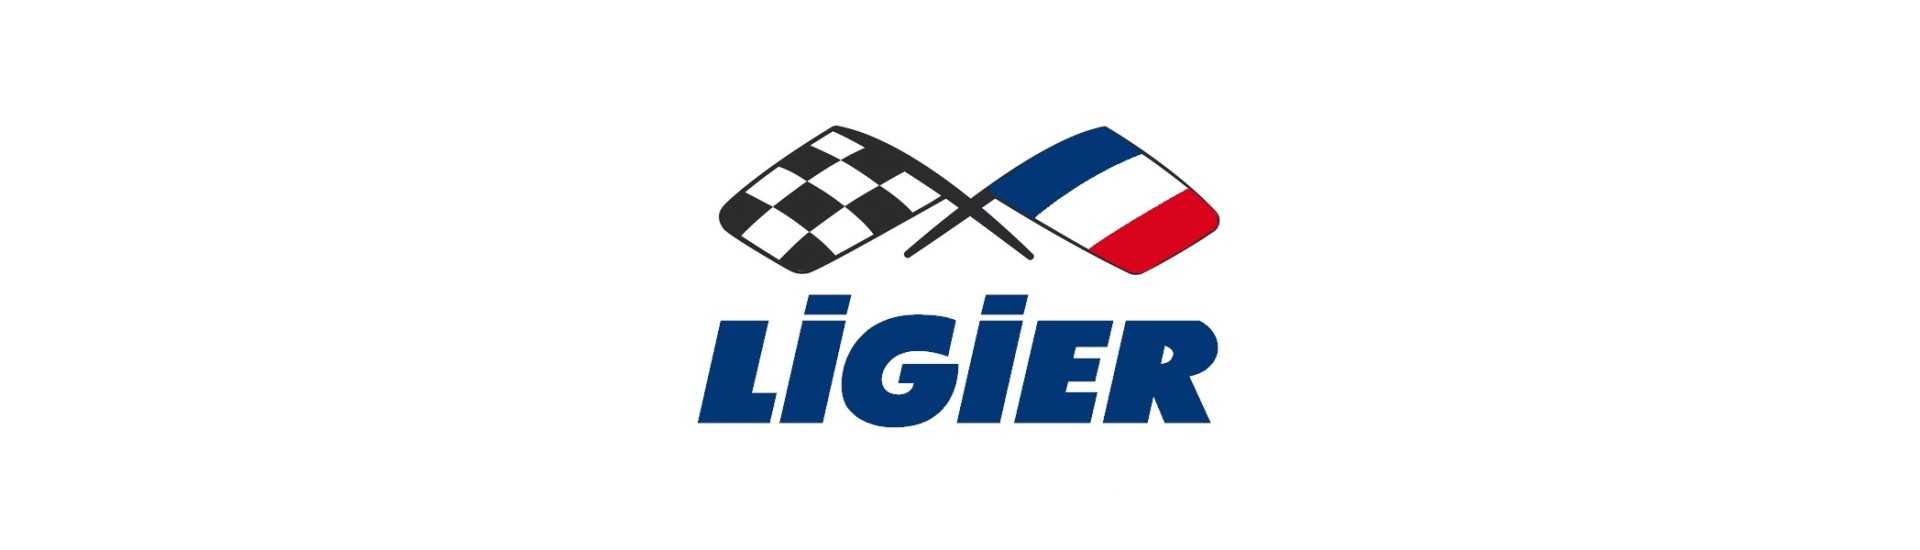 Rotolo di sospensione al miglior prezzo per auto senza permesso Ligier